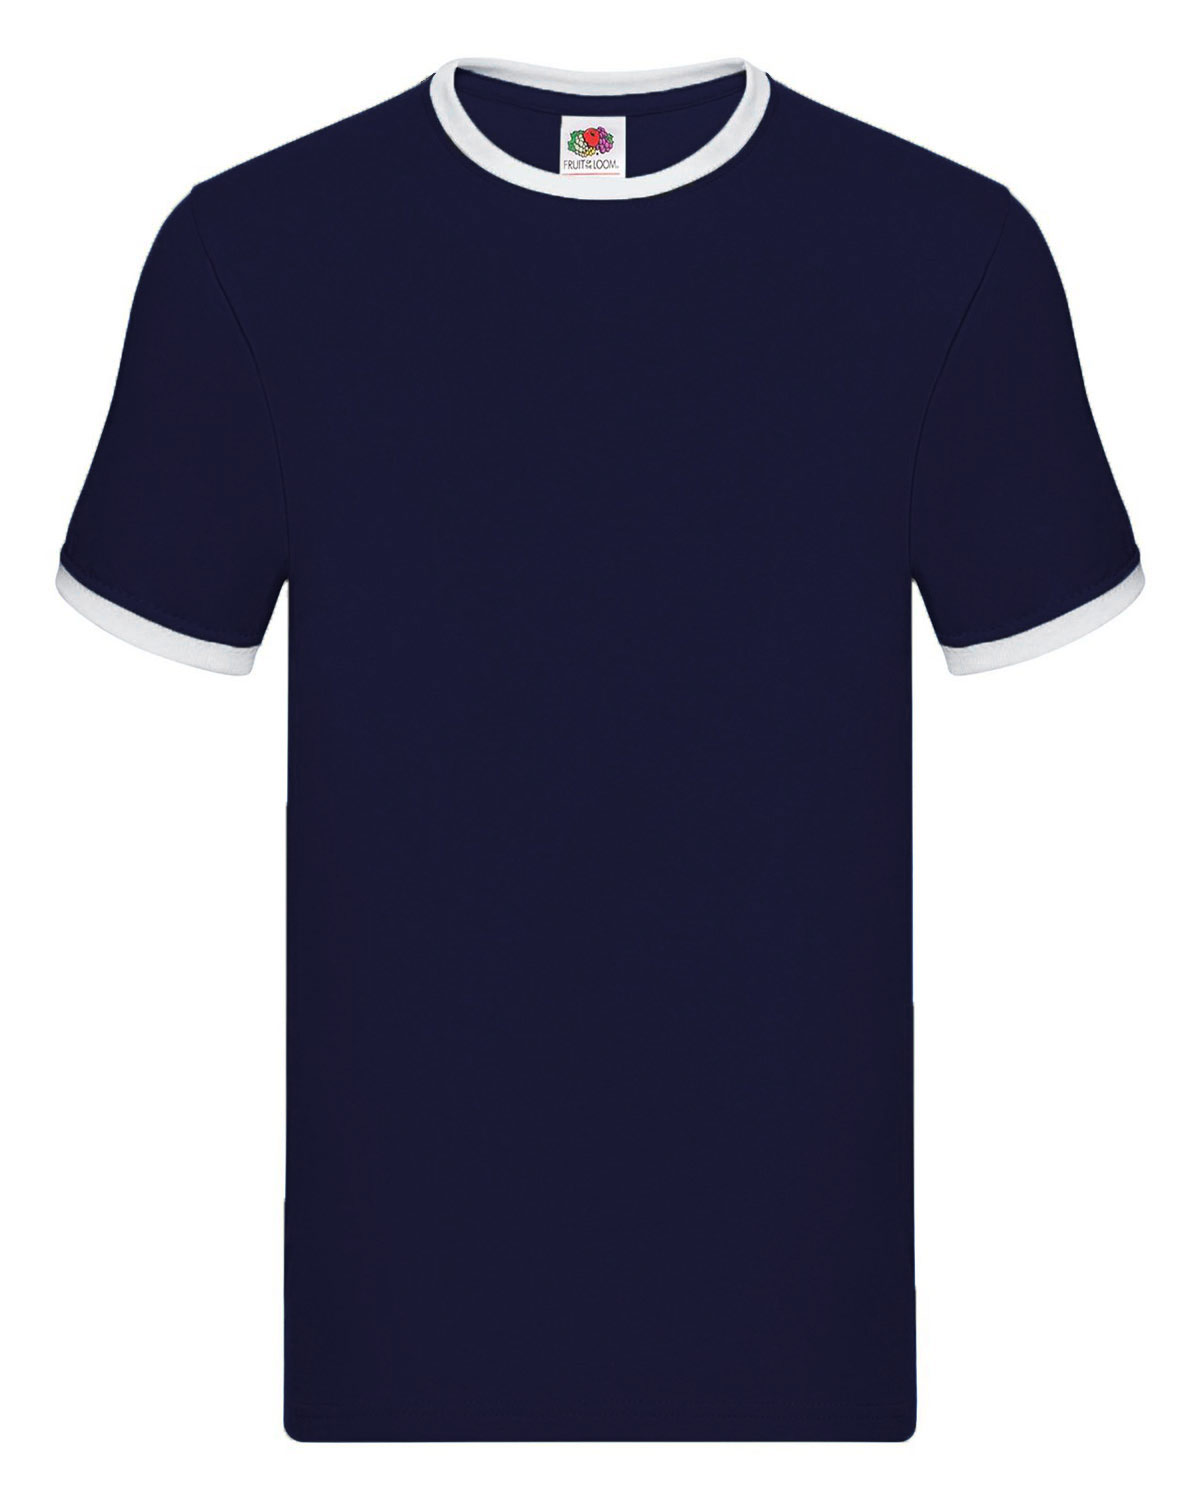 Ringer T-Shirt Navy/White XXL